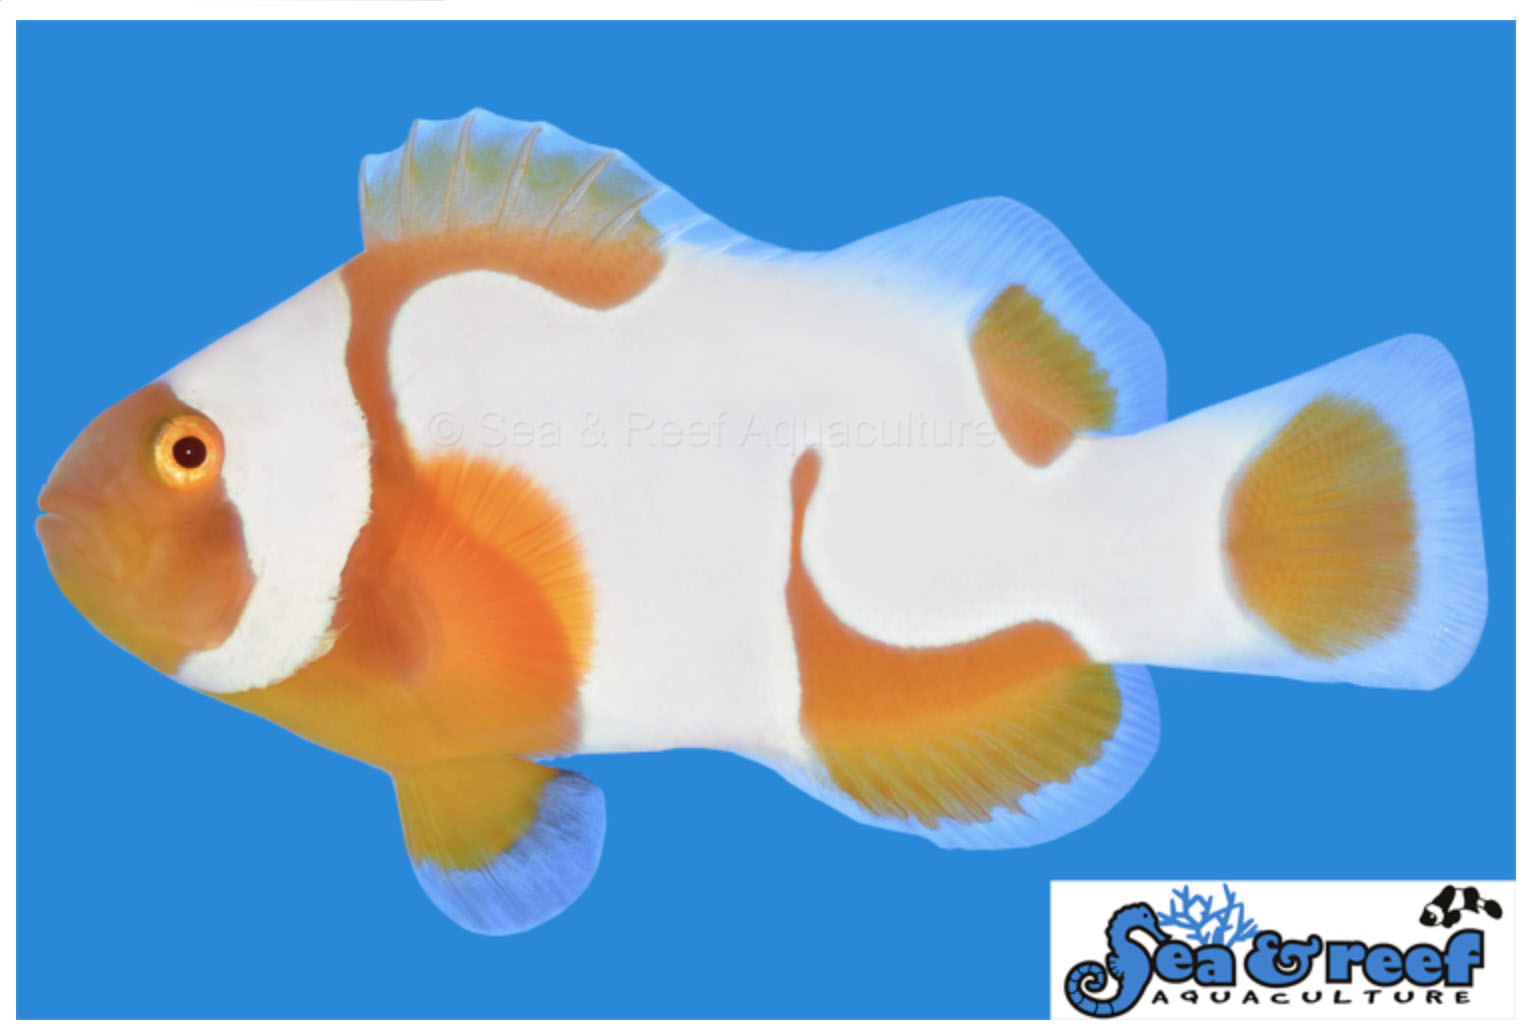 Sea & Reef's New Tangerine Albino Picasso Clownfish